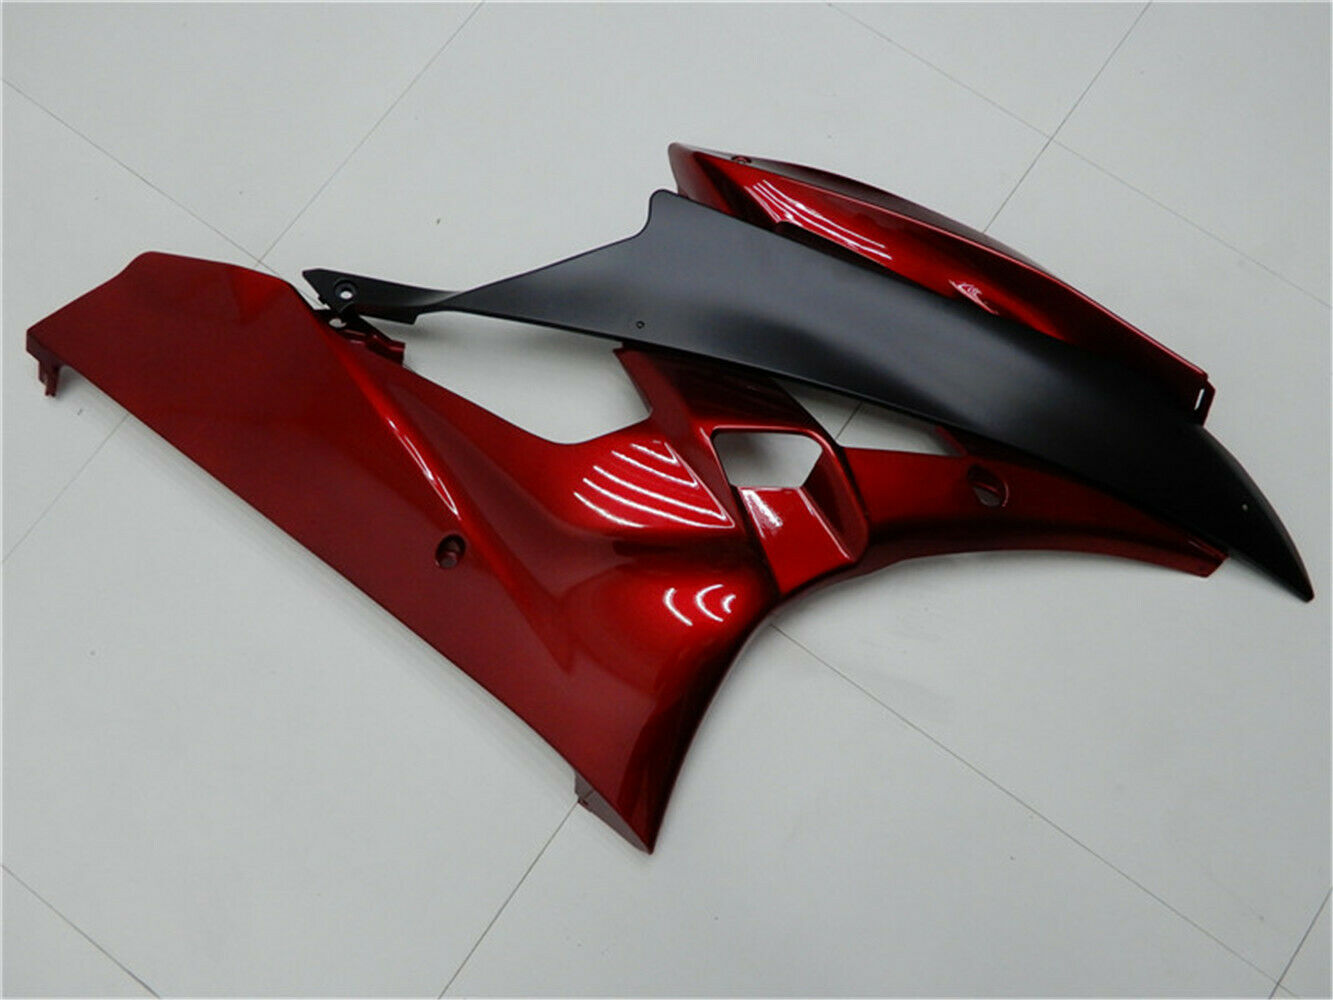 Amotopart nouveau carénage de Kits de plastique d'injection rouge noir pour Yamaha 2006 2007 YZF R6 générique